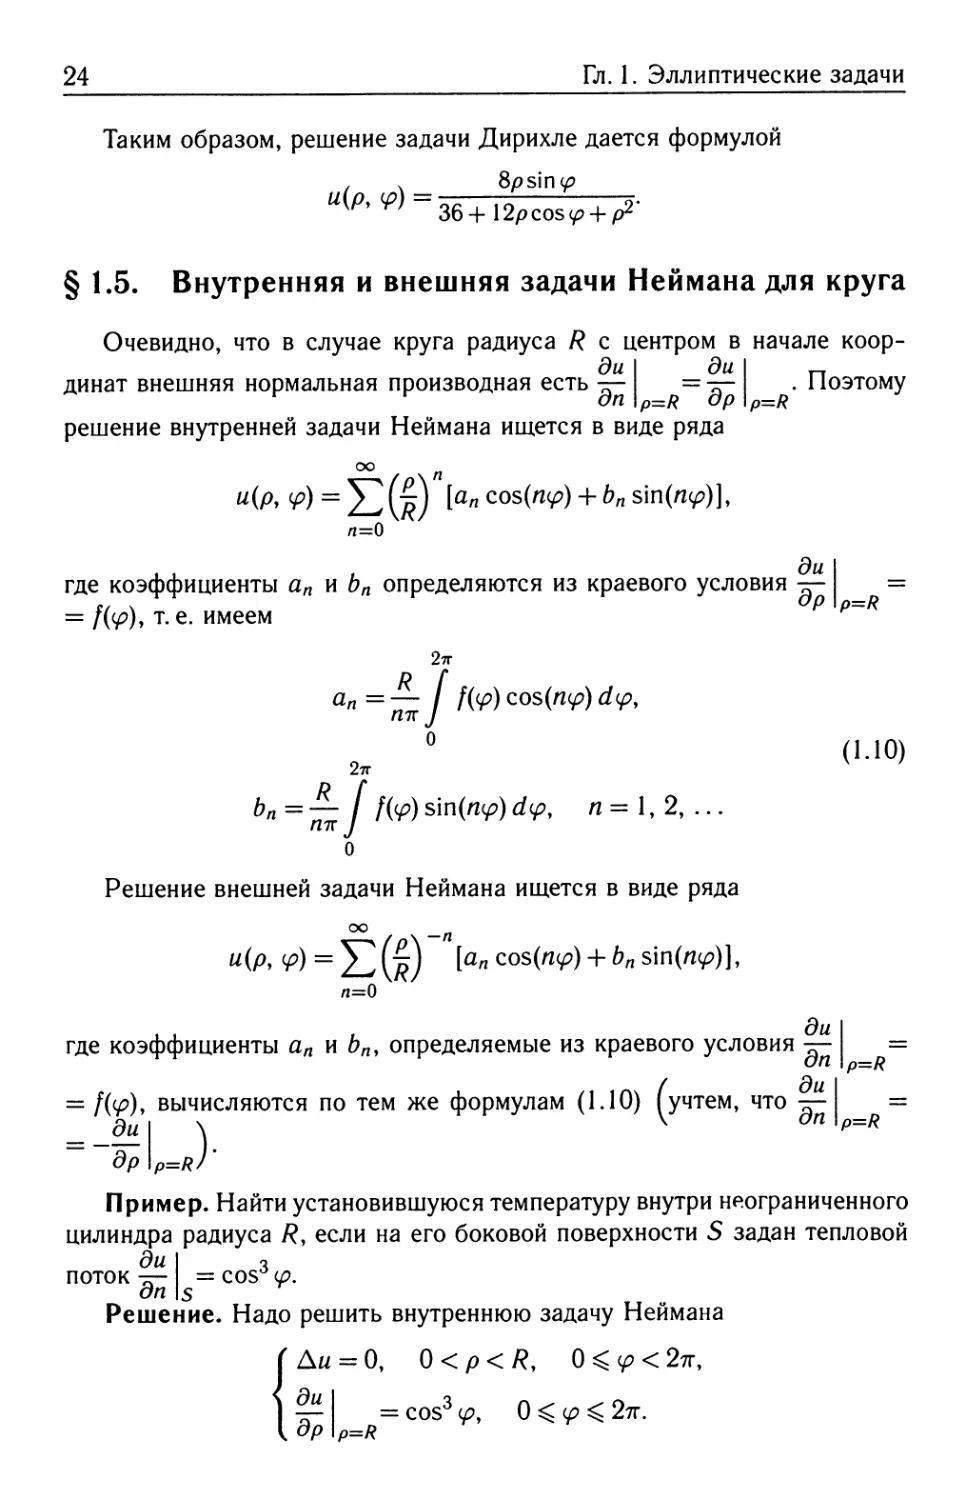 § 1.5. Внутренняя и внешняя задачи Неймана для круга